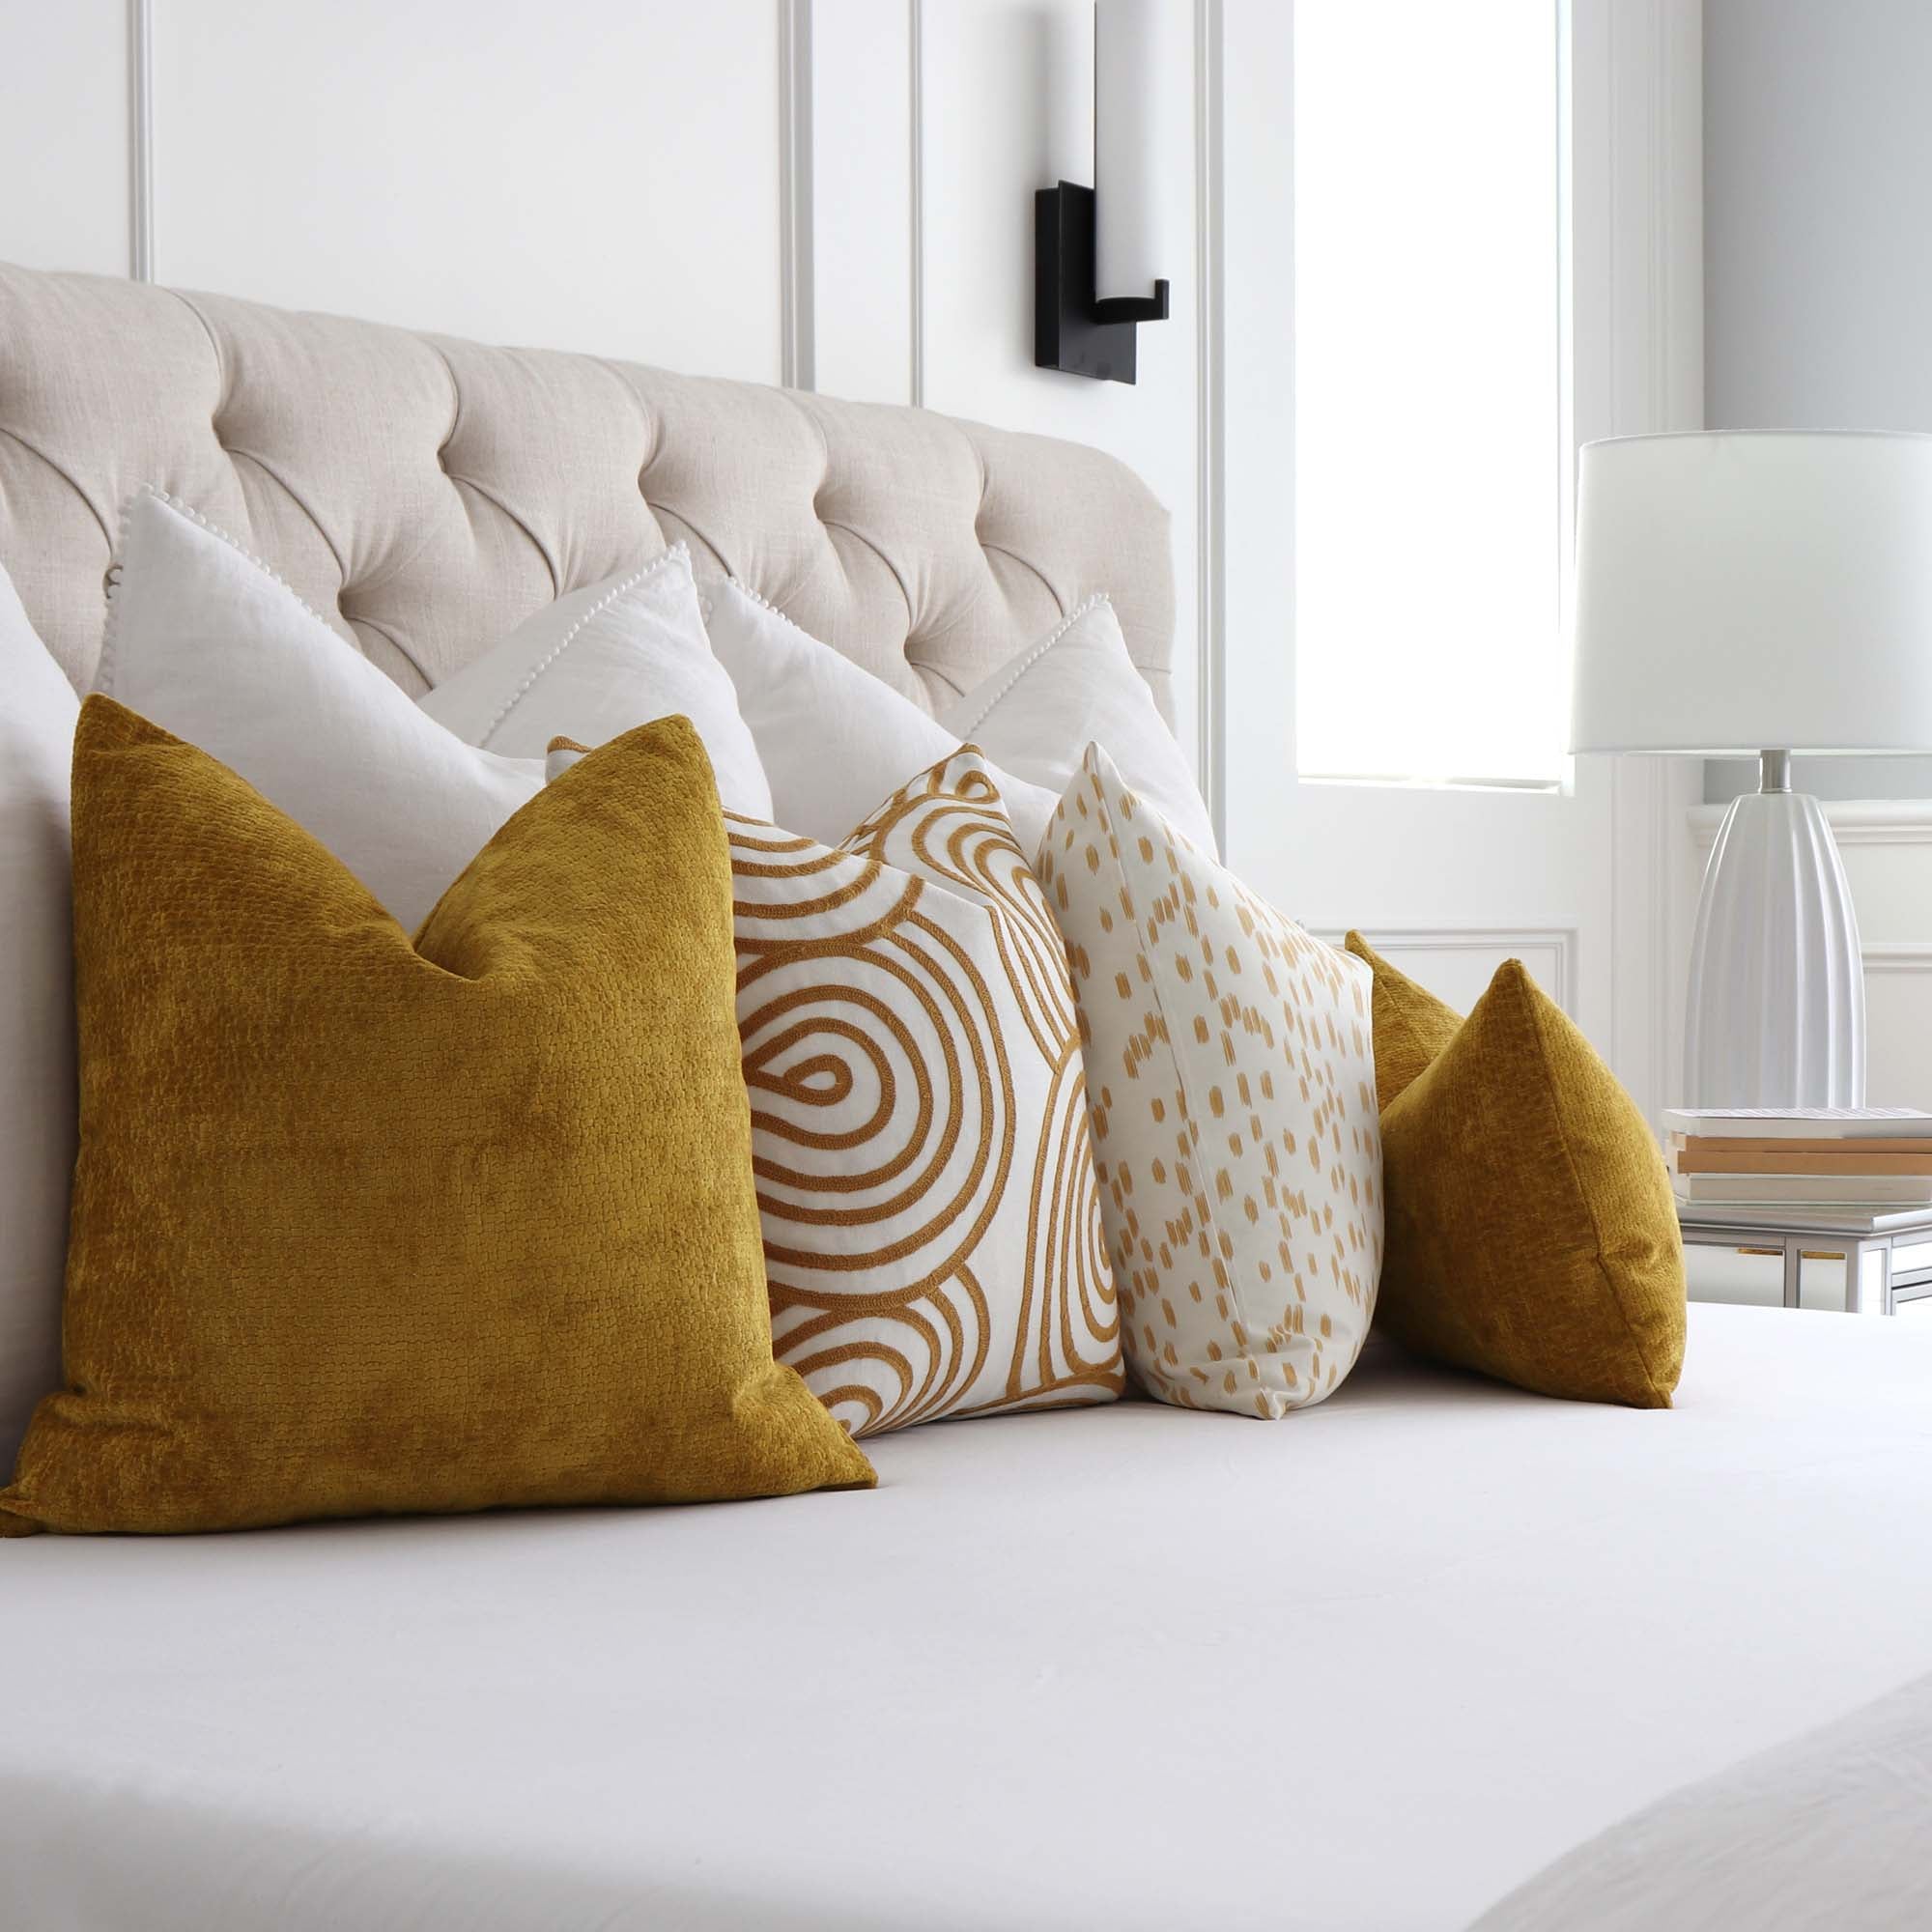 Kelly Wearstler Lee Jofa Rebus Glint Gold Textured Velvet Designer Throw Pillow Cover